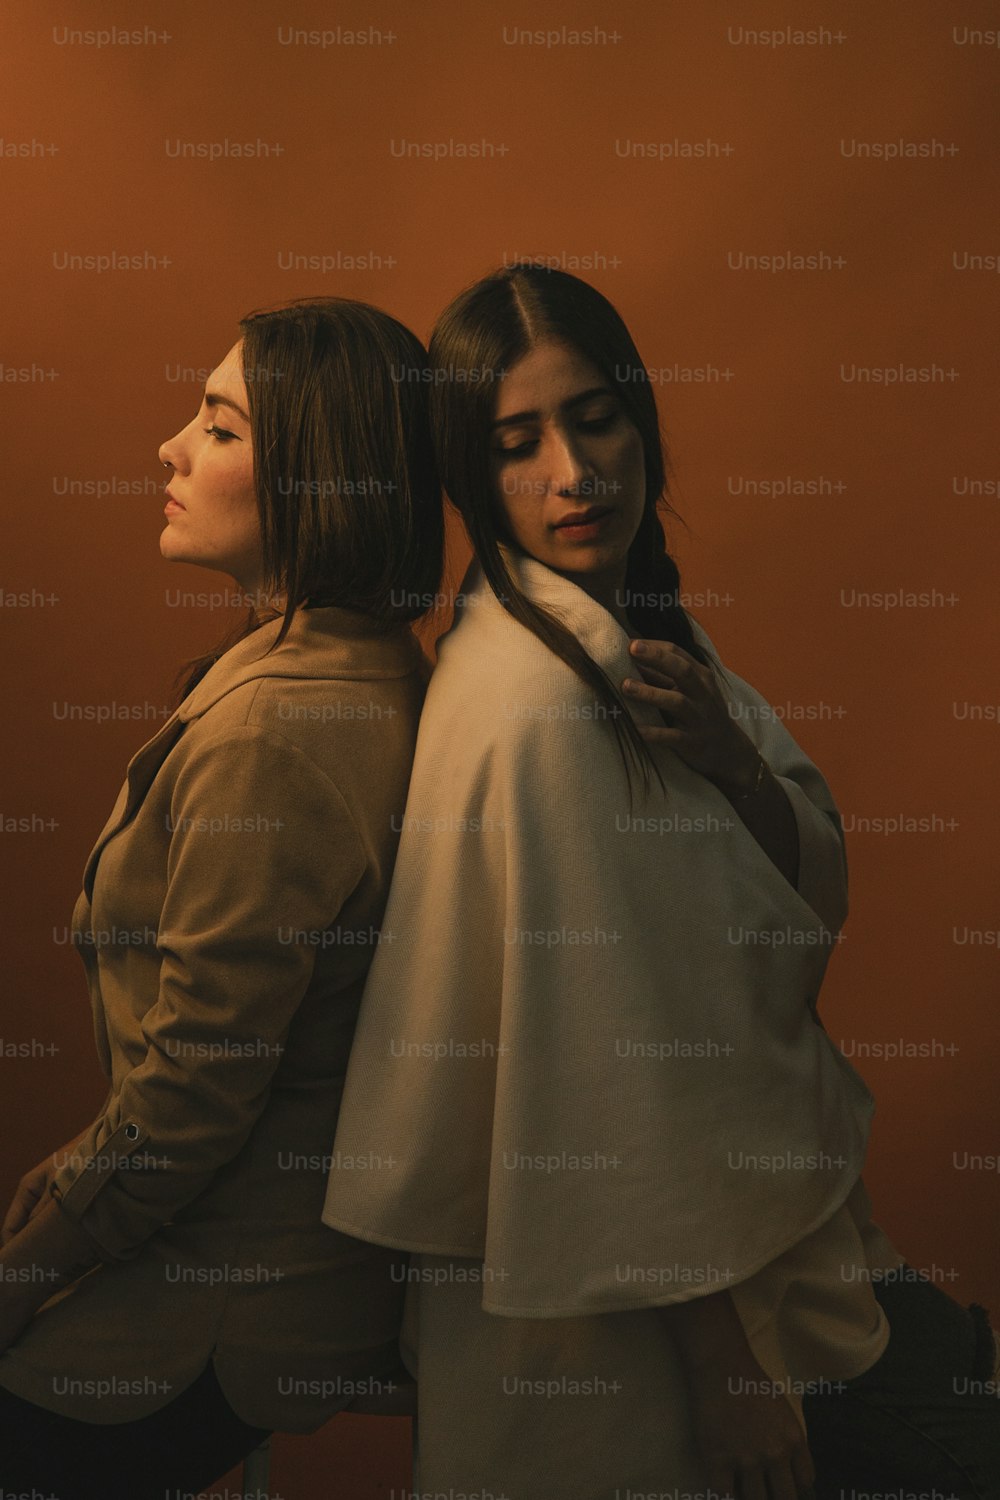 Zwei Frauen stehen nebeneinander vor einer orangefarbenen Wand